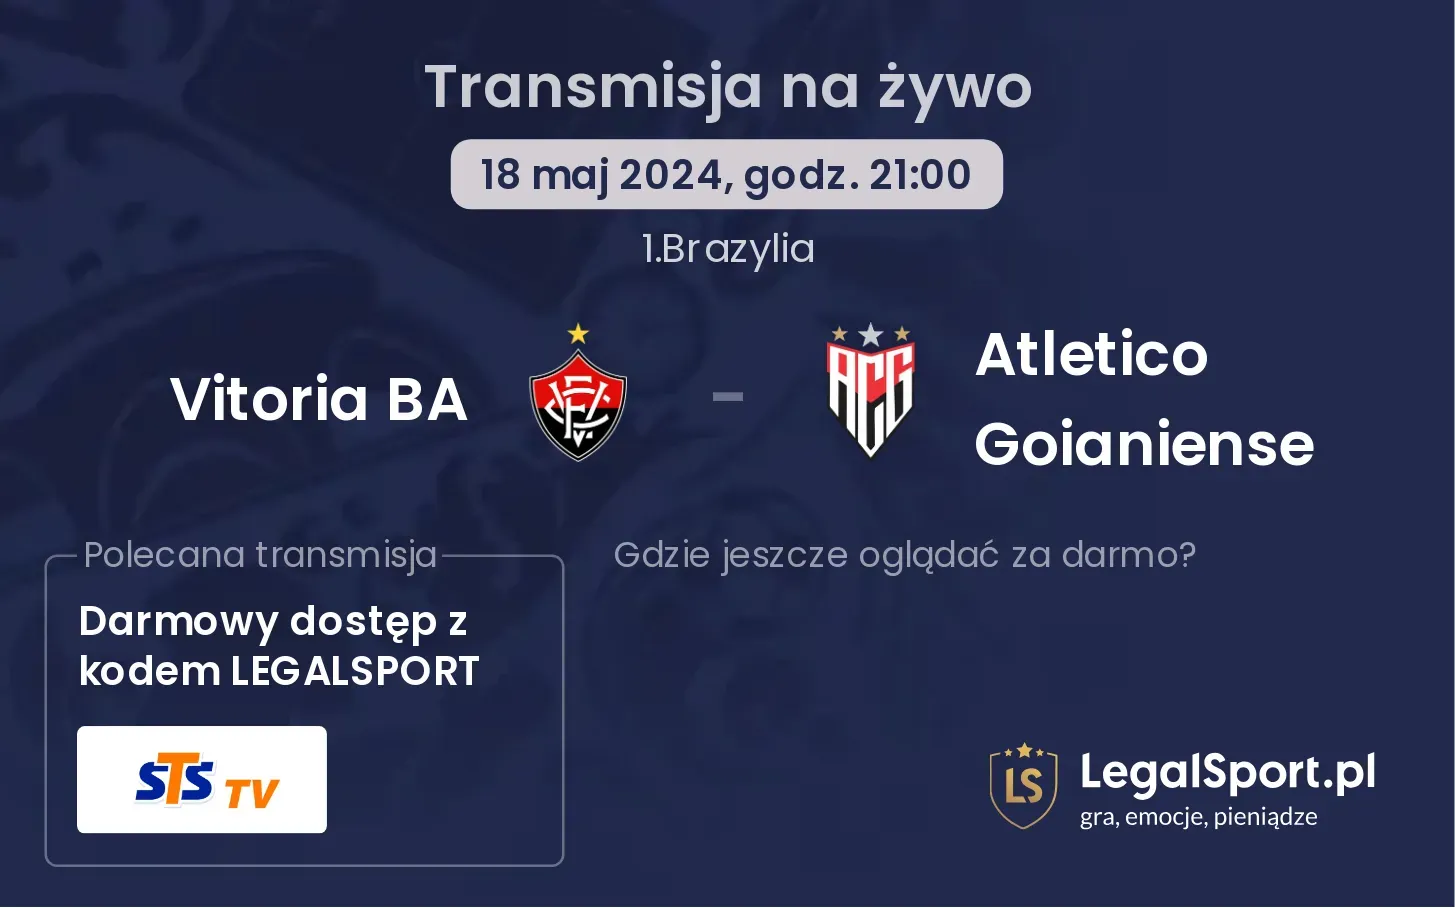 Vitoria BA - Atletico Goianiense 